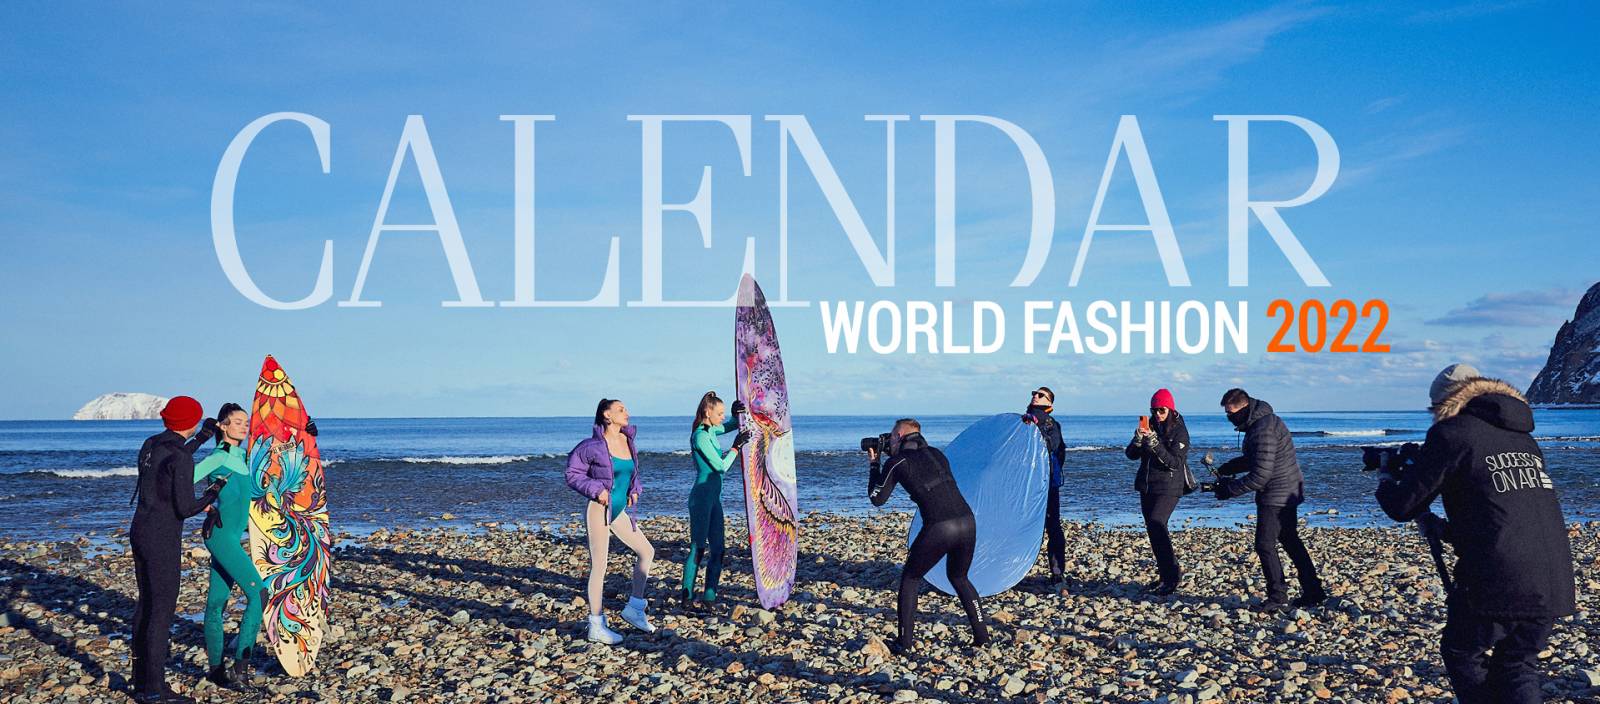 World Fashion Calendar